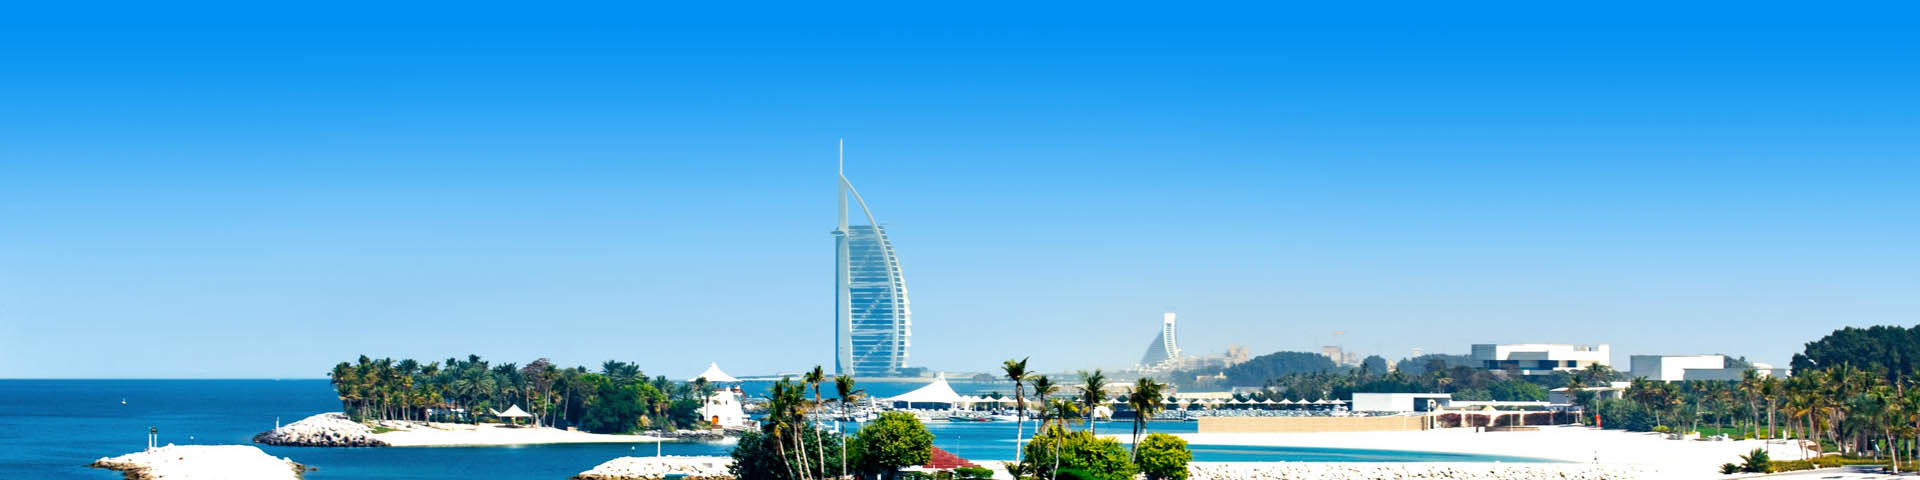 Uitzicht over Dubai met de Burj al Arab op de achtergrond